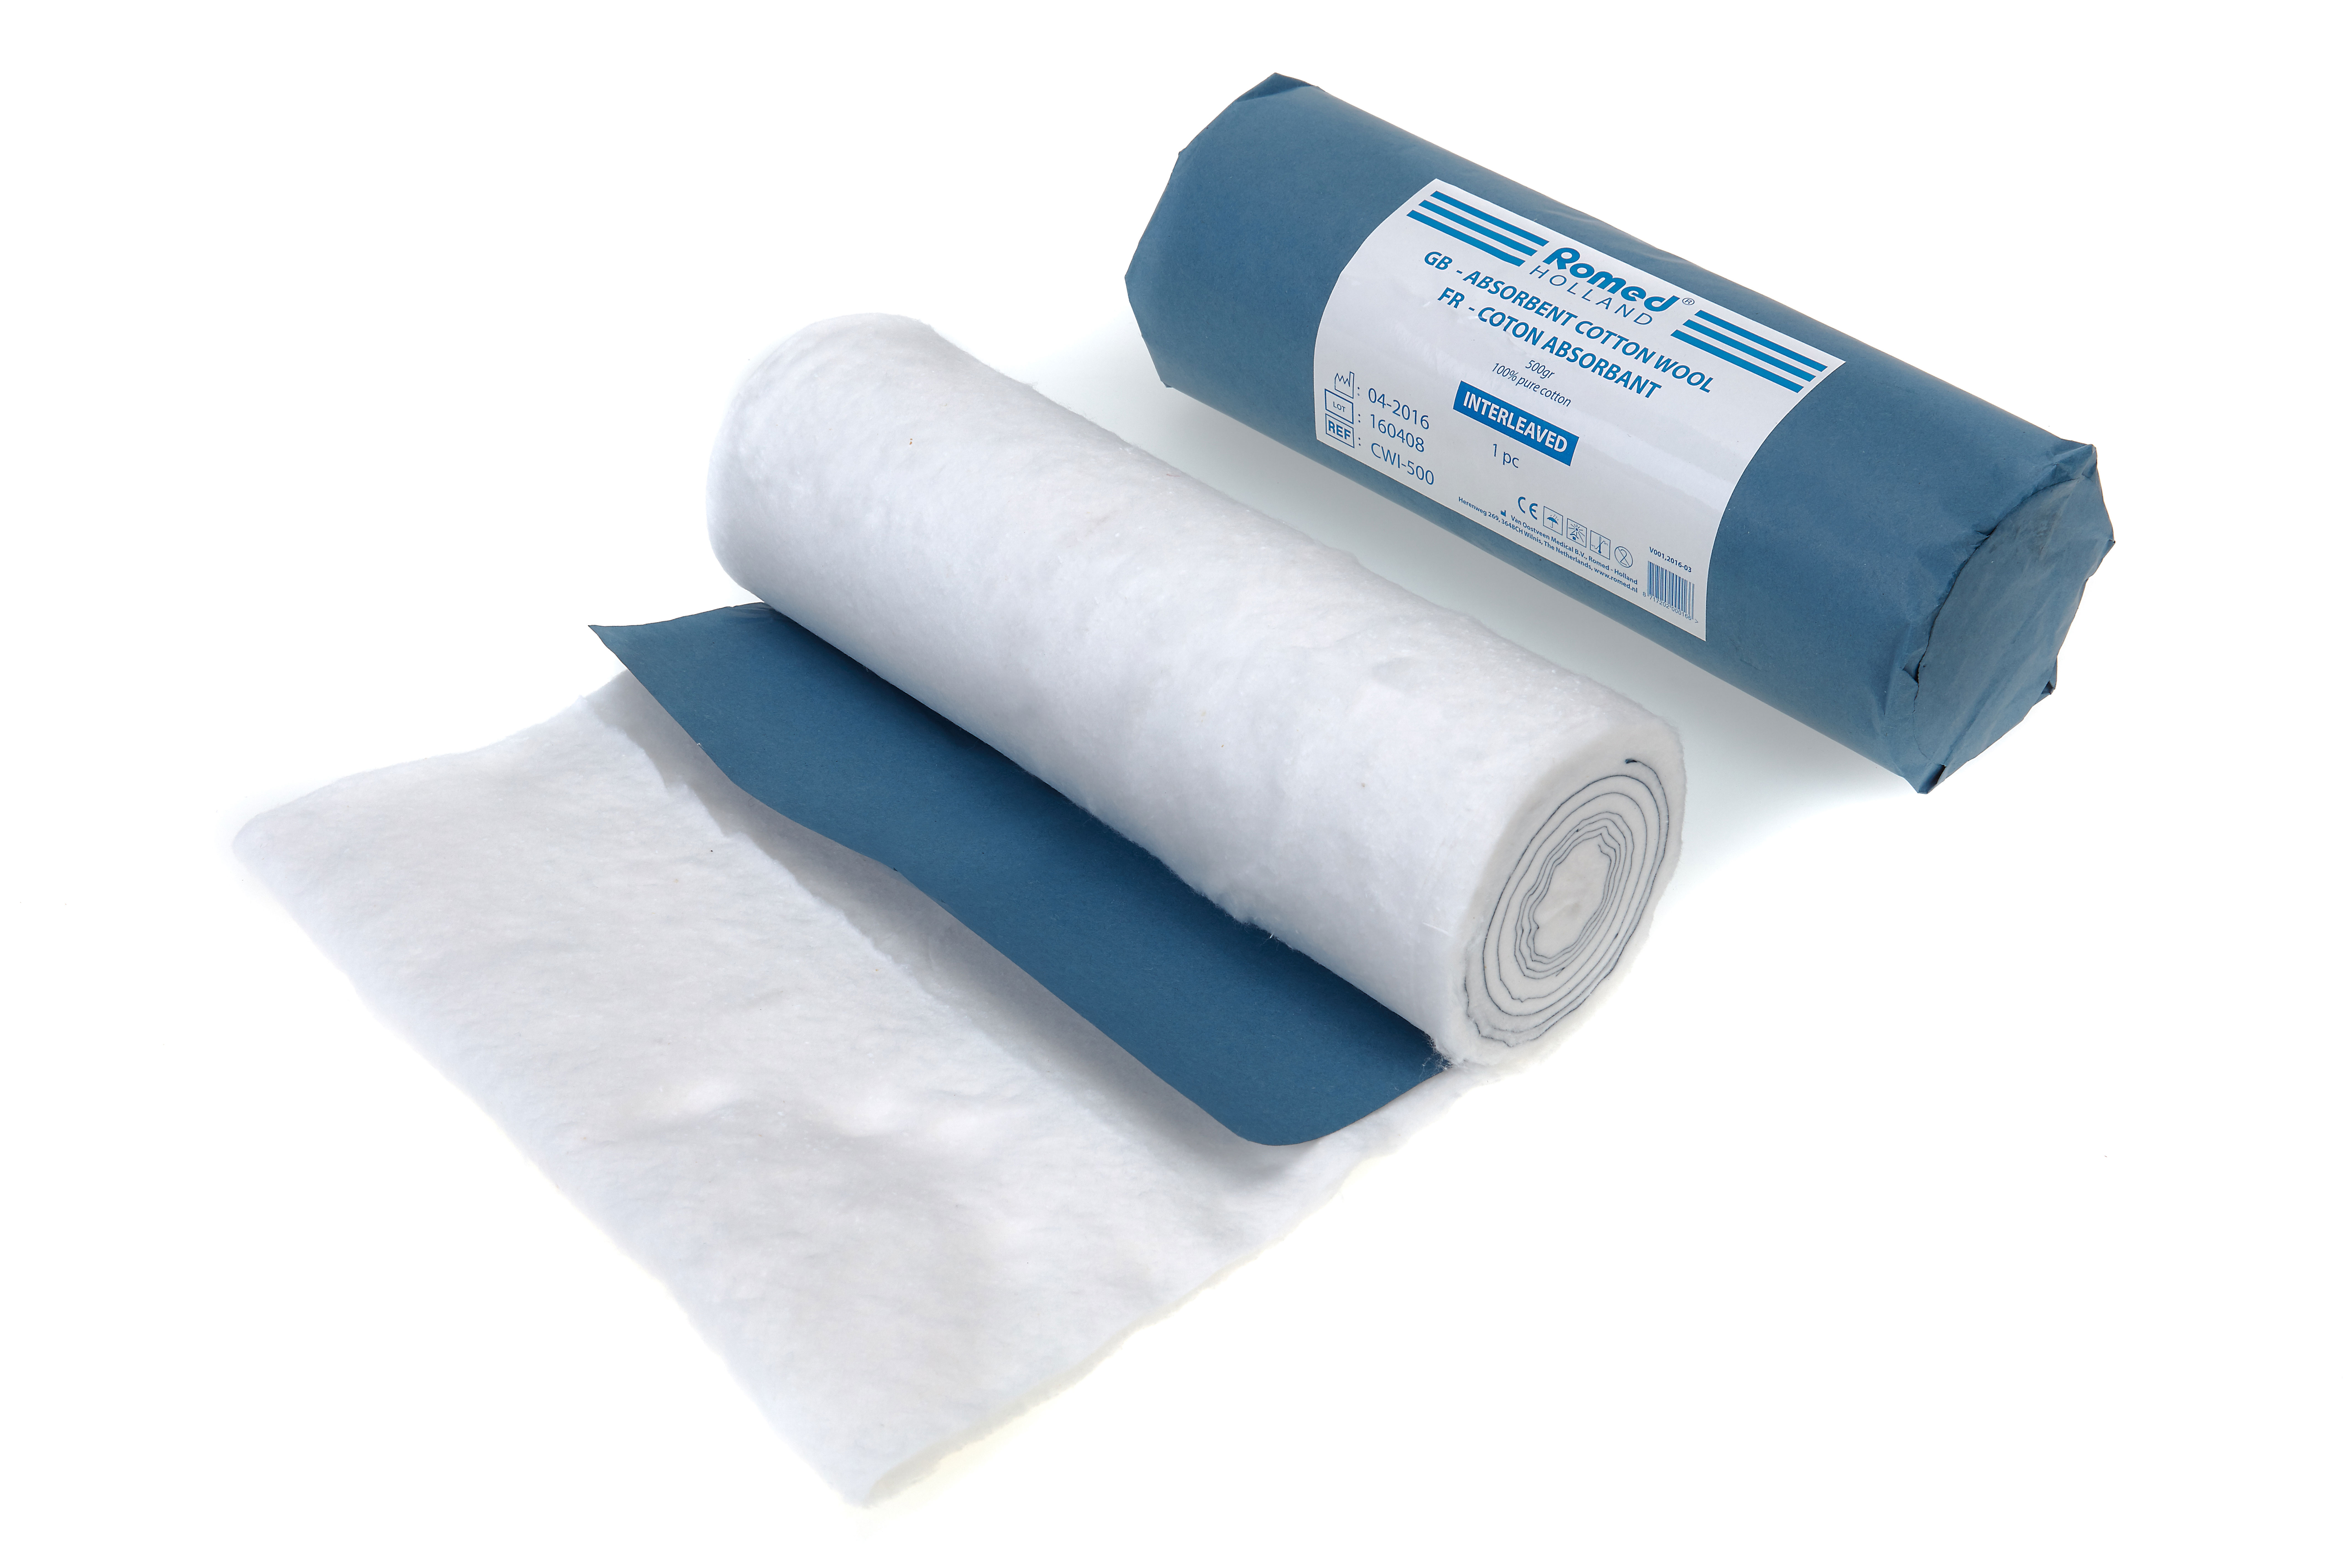 CWI-500 Ouate absorbante Romed, dégraissée et blanchie, entrelacée, avec papier bleu: extrémité coupée, 500gr, 100% pur coton, par pièce, 30 rouleaux dans un carton